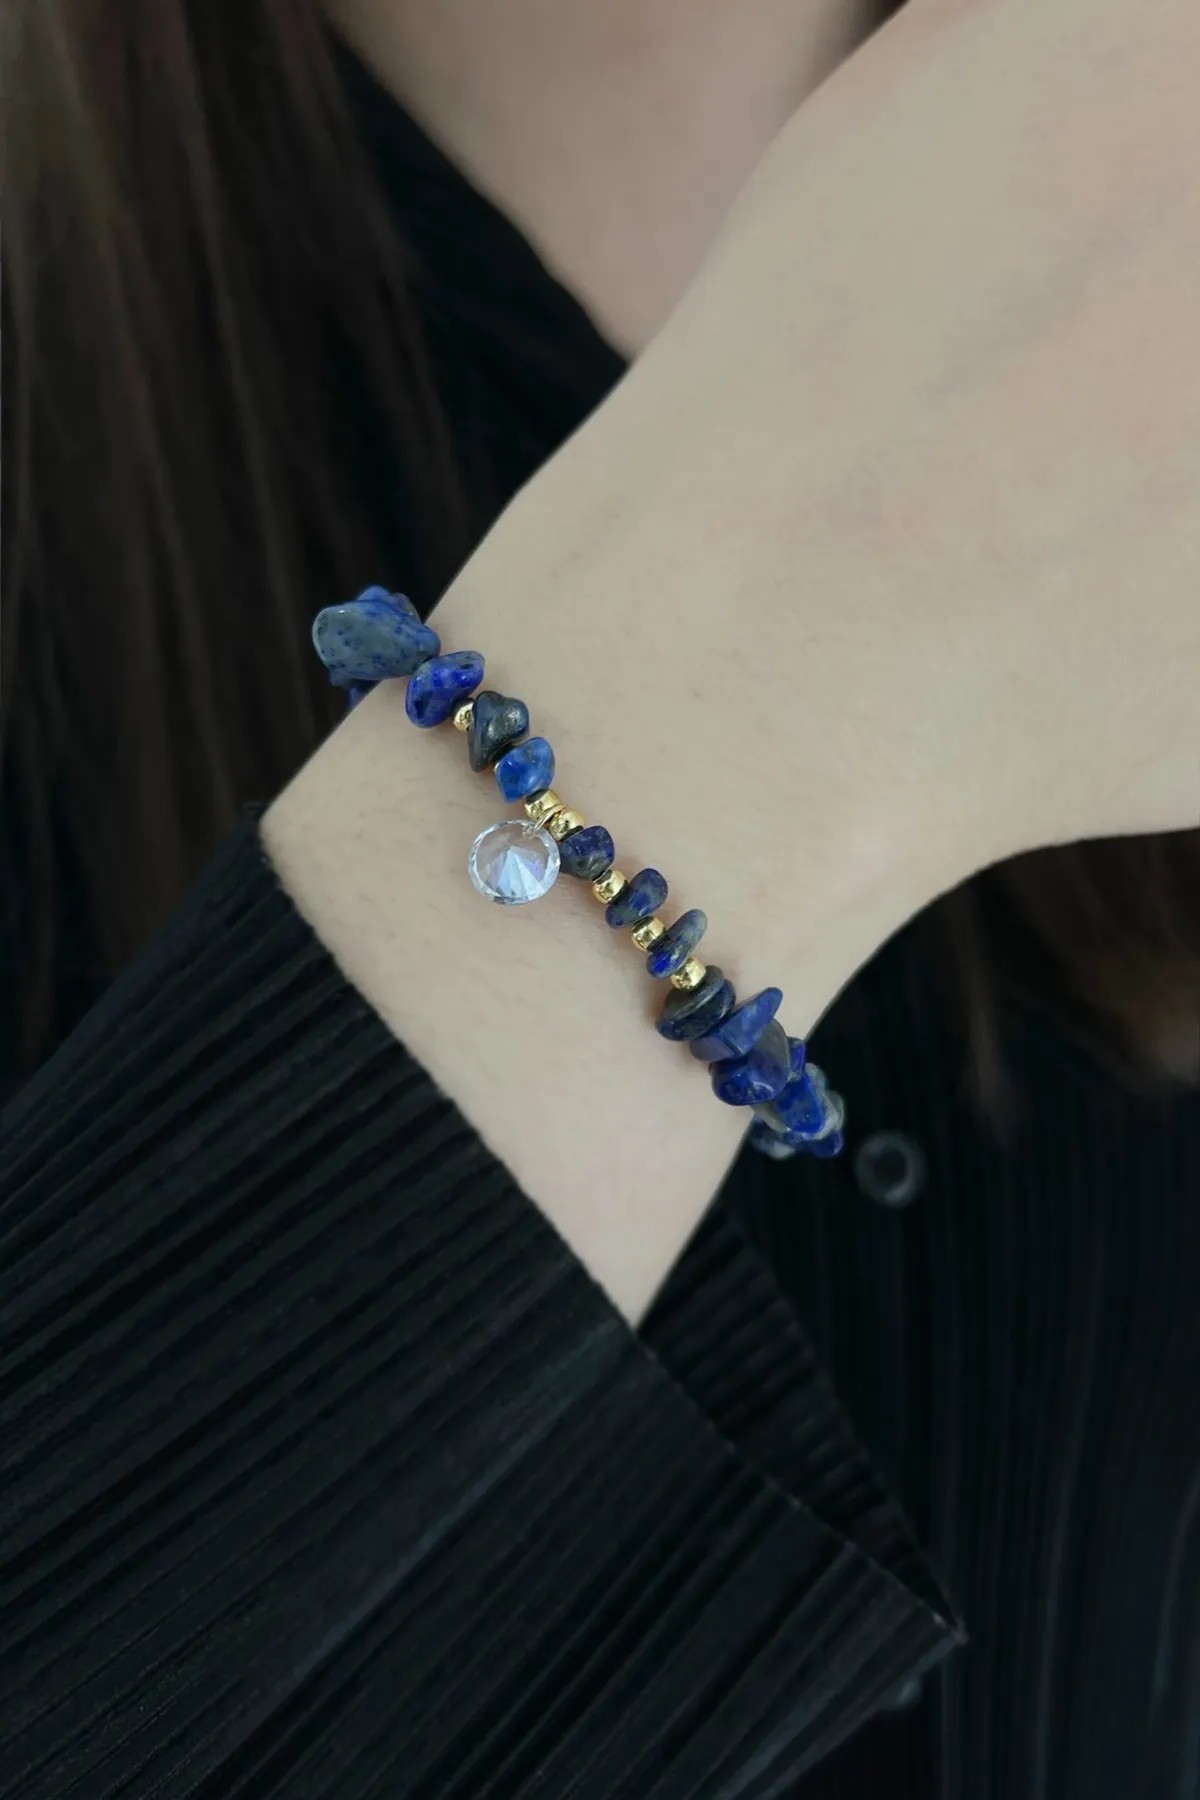 Özel Tasarım Bileklik - Lapis Lazuli (Zihinsel Temizlik Taşı)